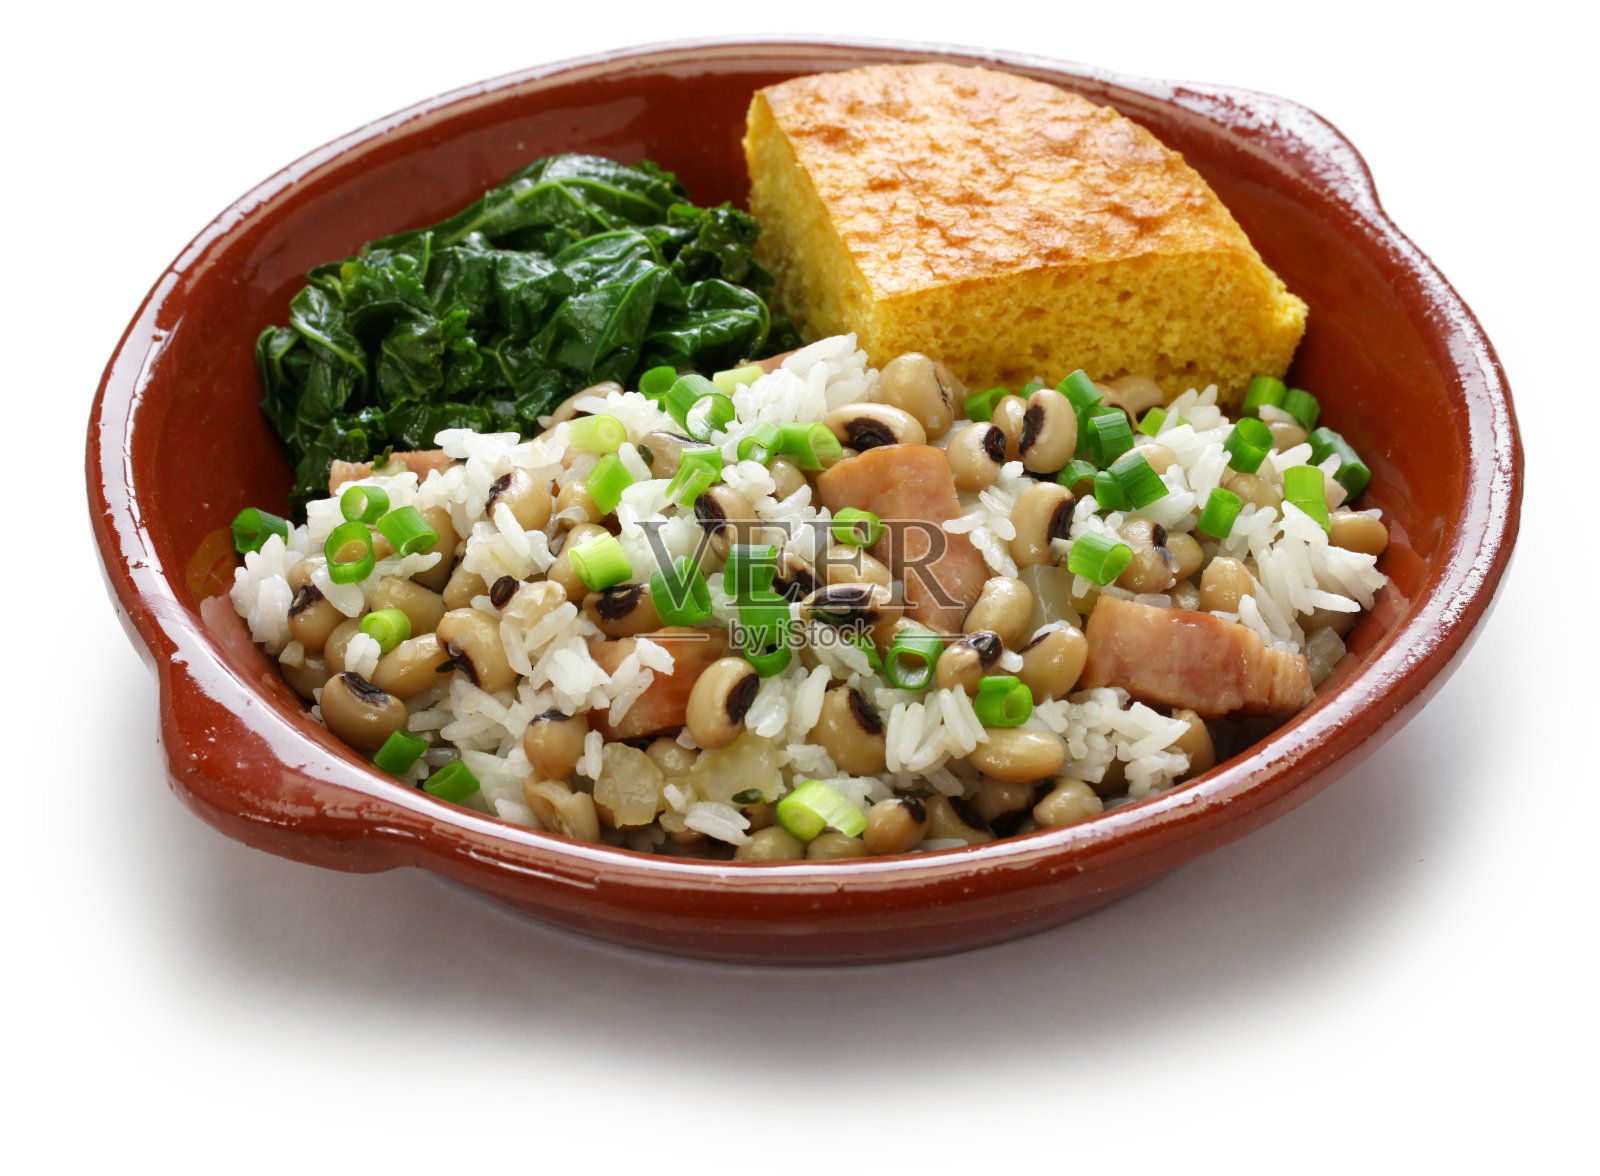 黑眼豌豆、米饭、玉米面包和羽衣甘蓝:南方食物照片摄影图片